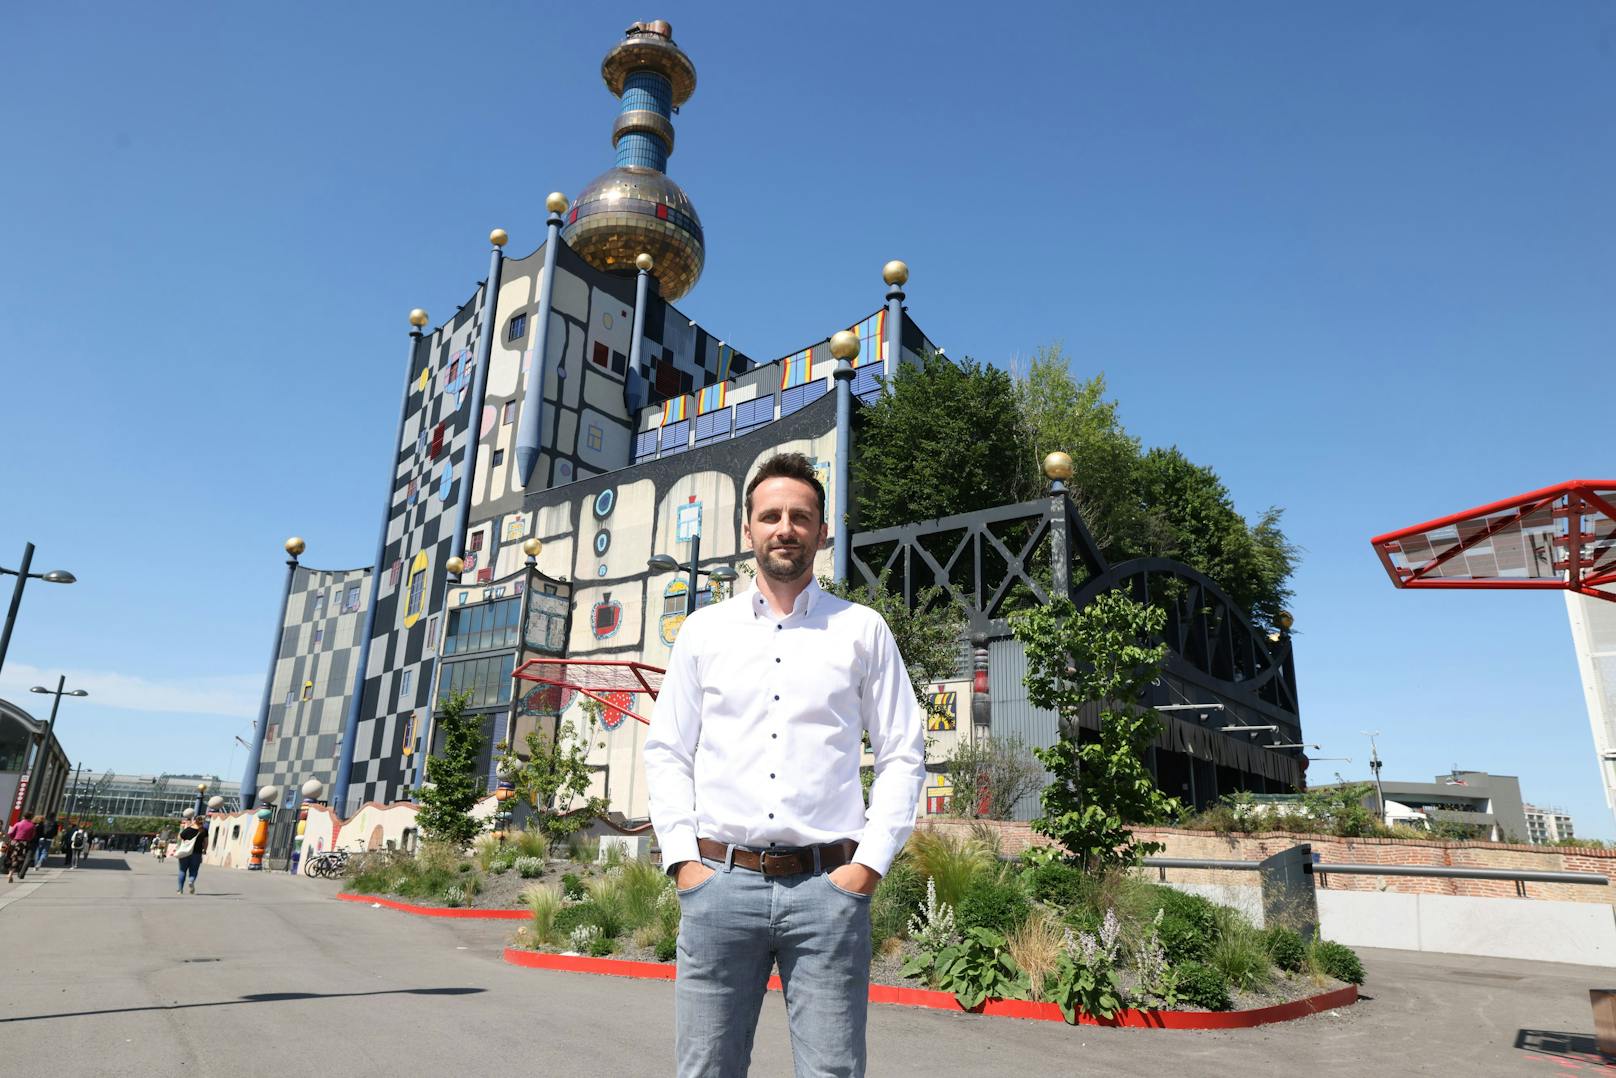 Hauscomfort-Klimapionier Dominik Dabrowski stellt das Projekt "Mobile Osmose-Anlage zur Glasreinigung ohne Chemie" vor.